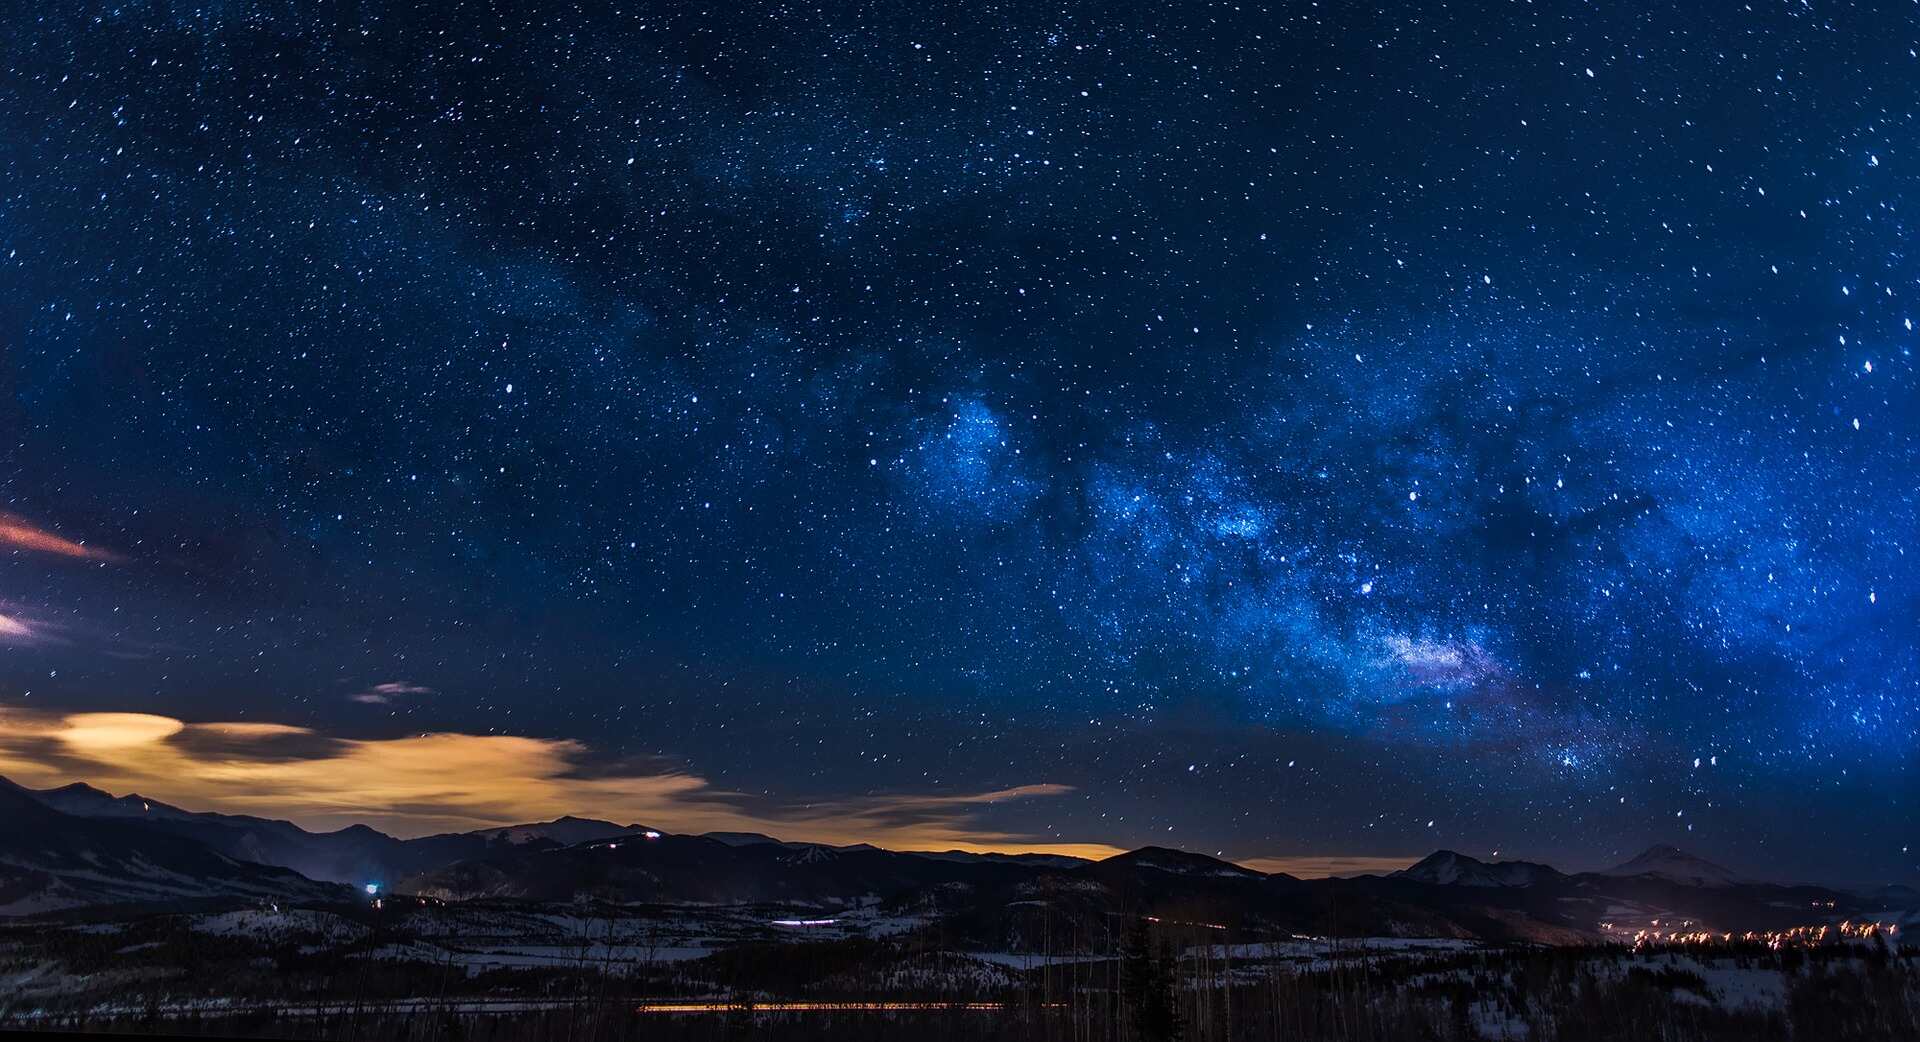 Colorado Sky at Night